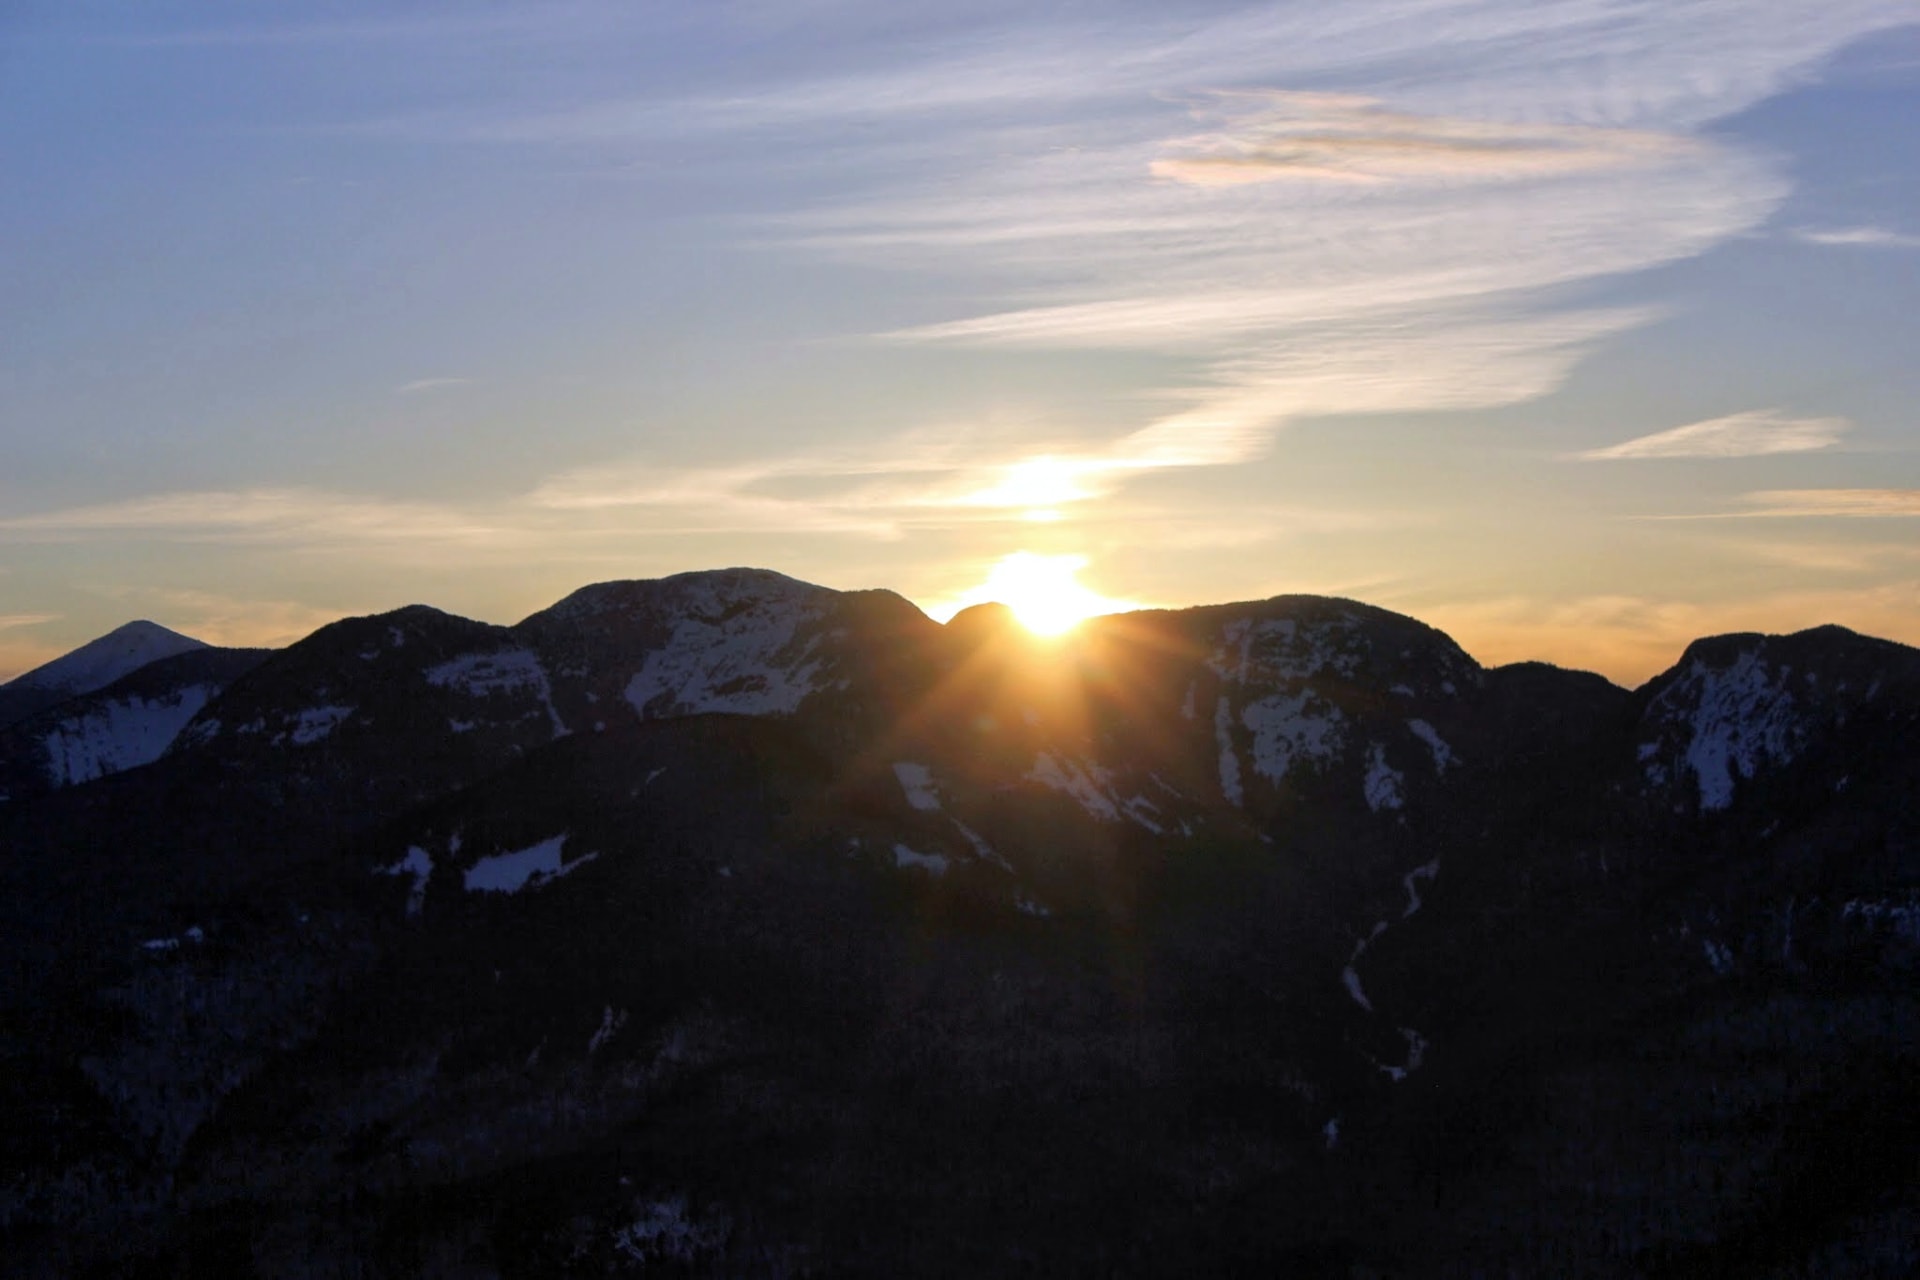 Noonmark summit for sunrise, Adirondack High Peaks